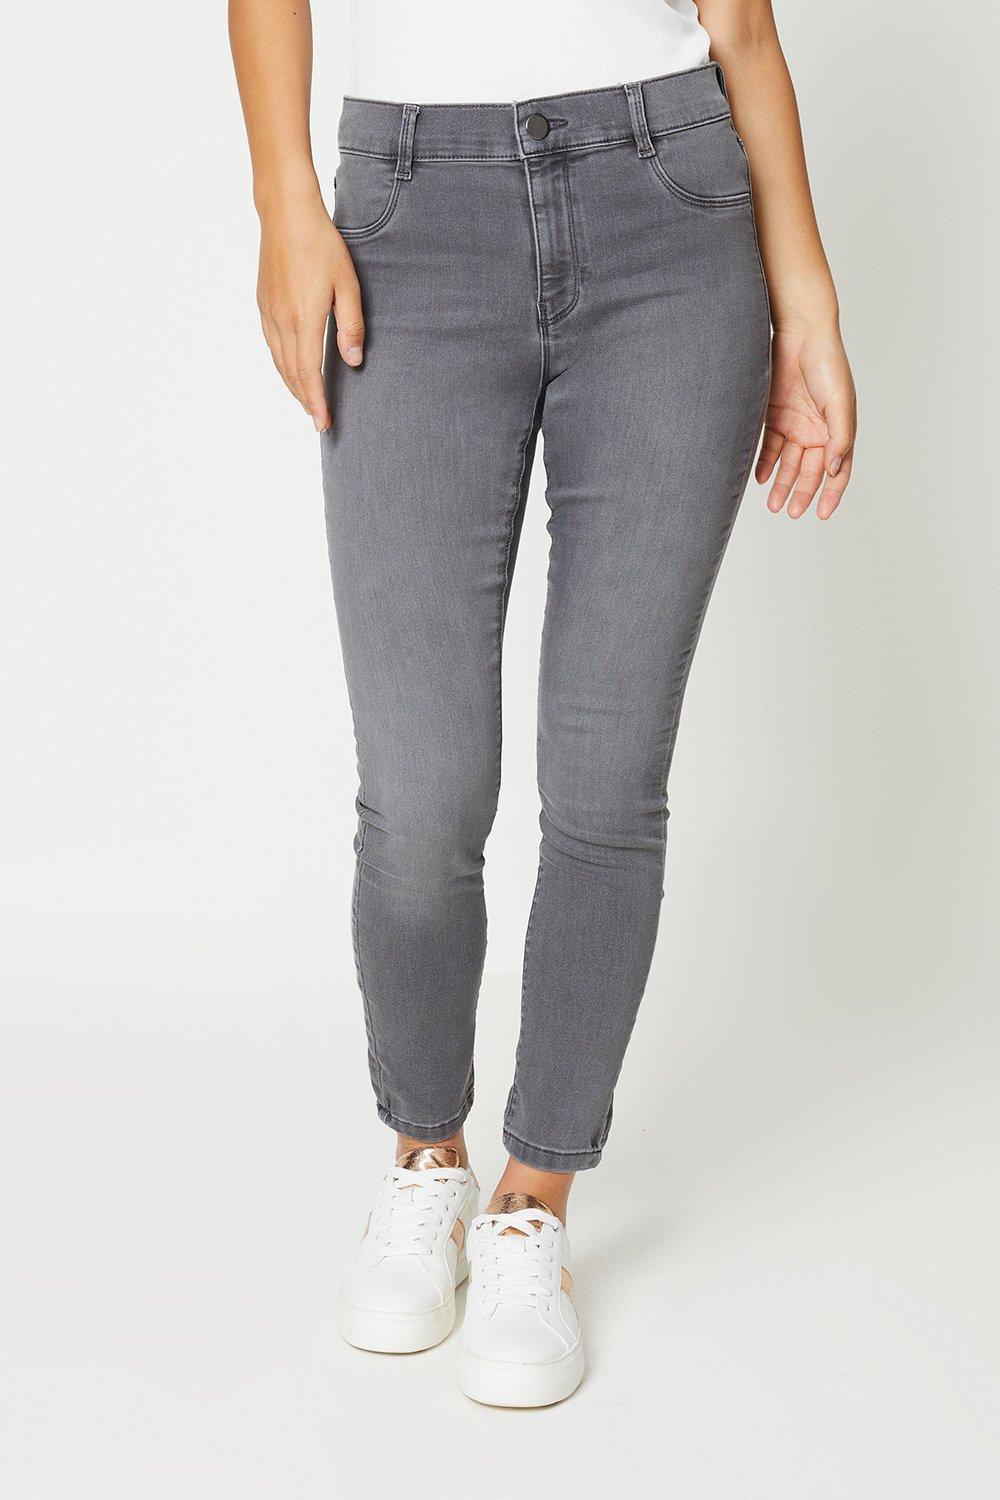 Women's Petite Frankie Skinny Jeans - grey - 16